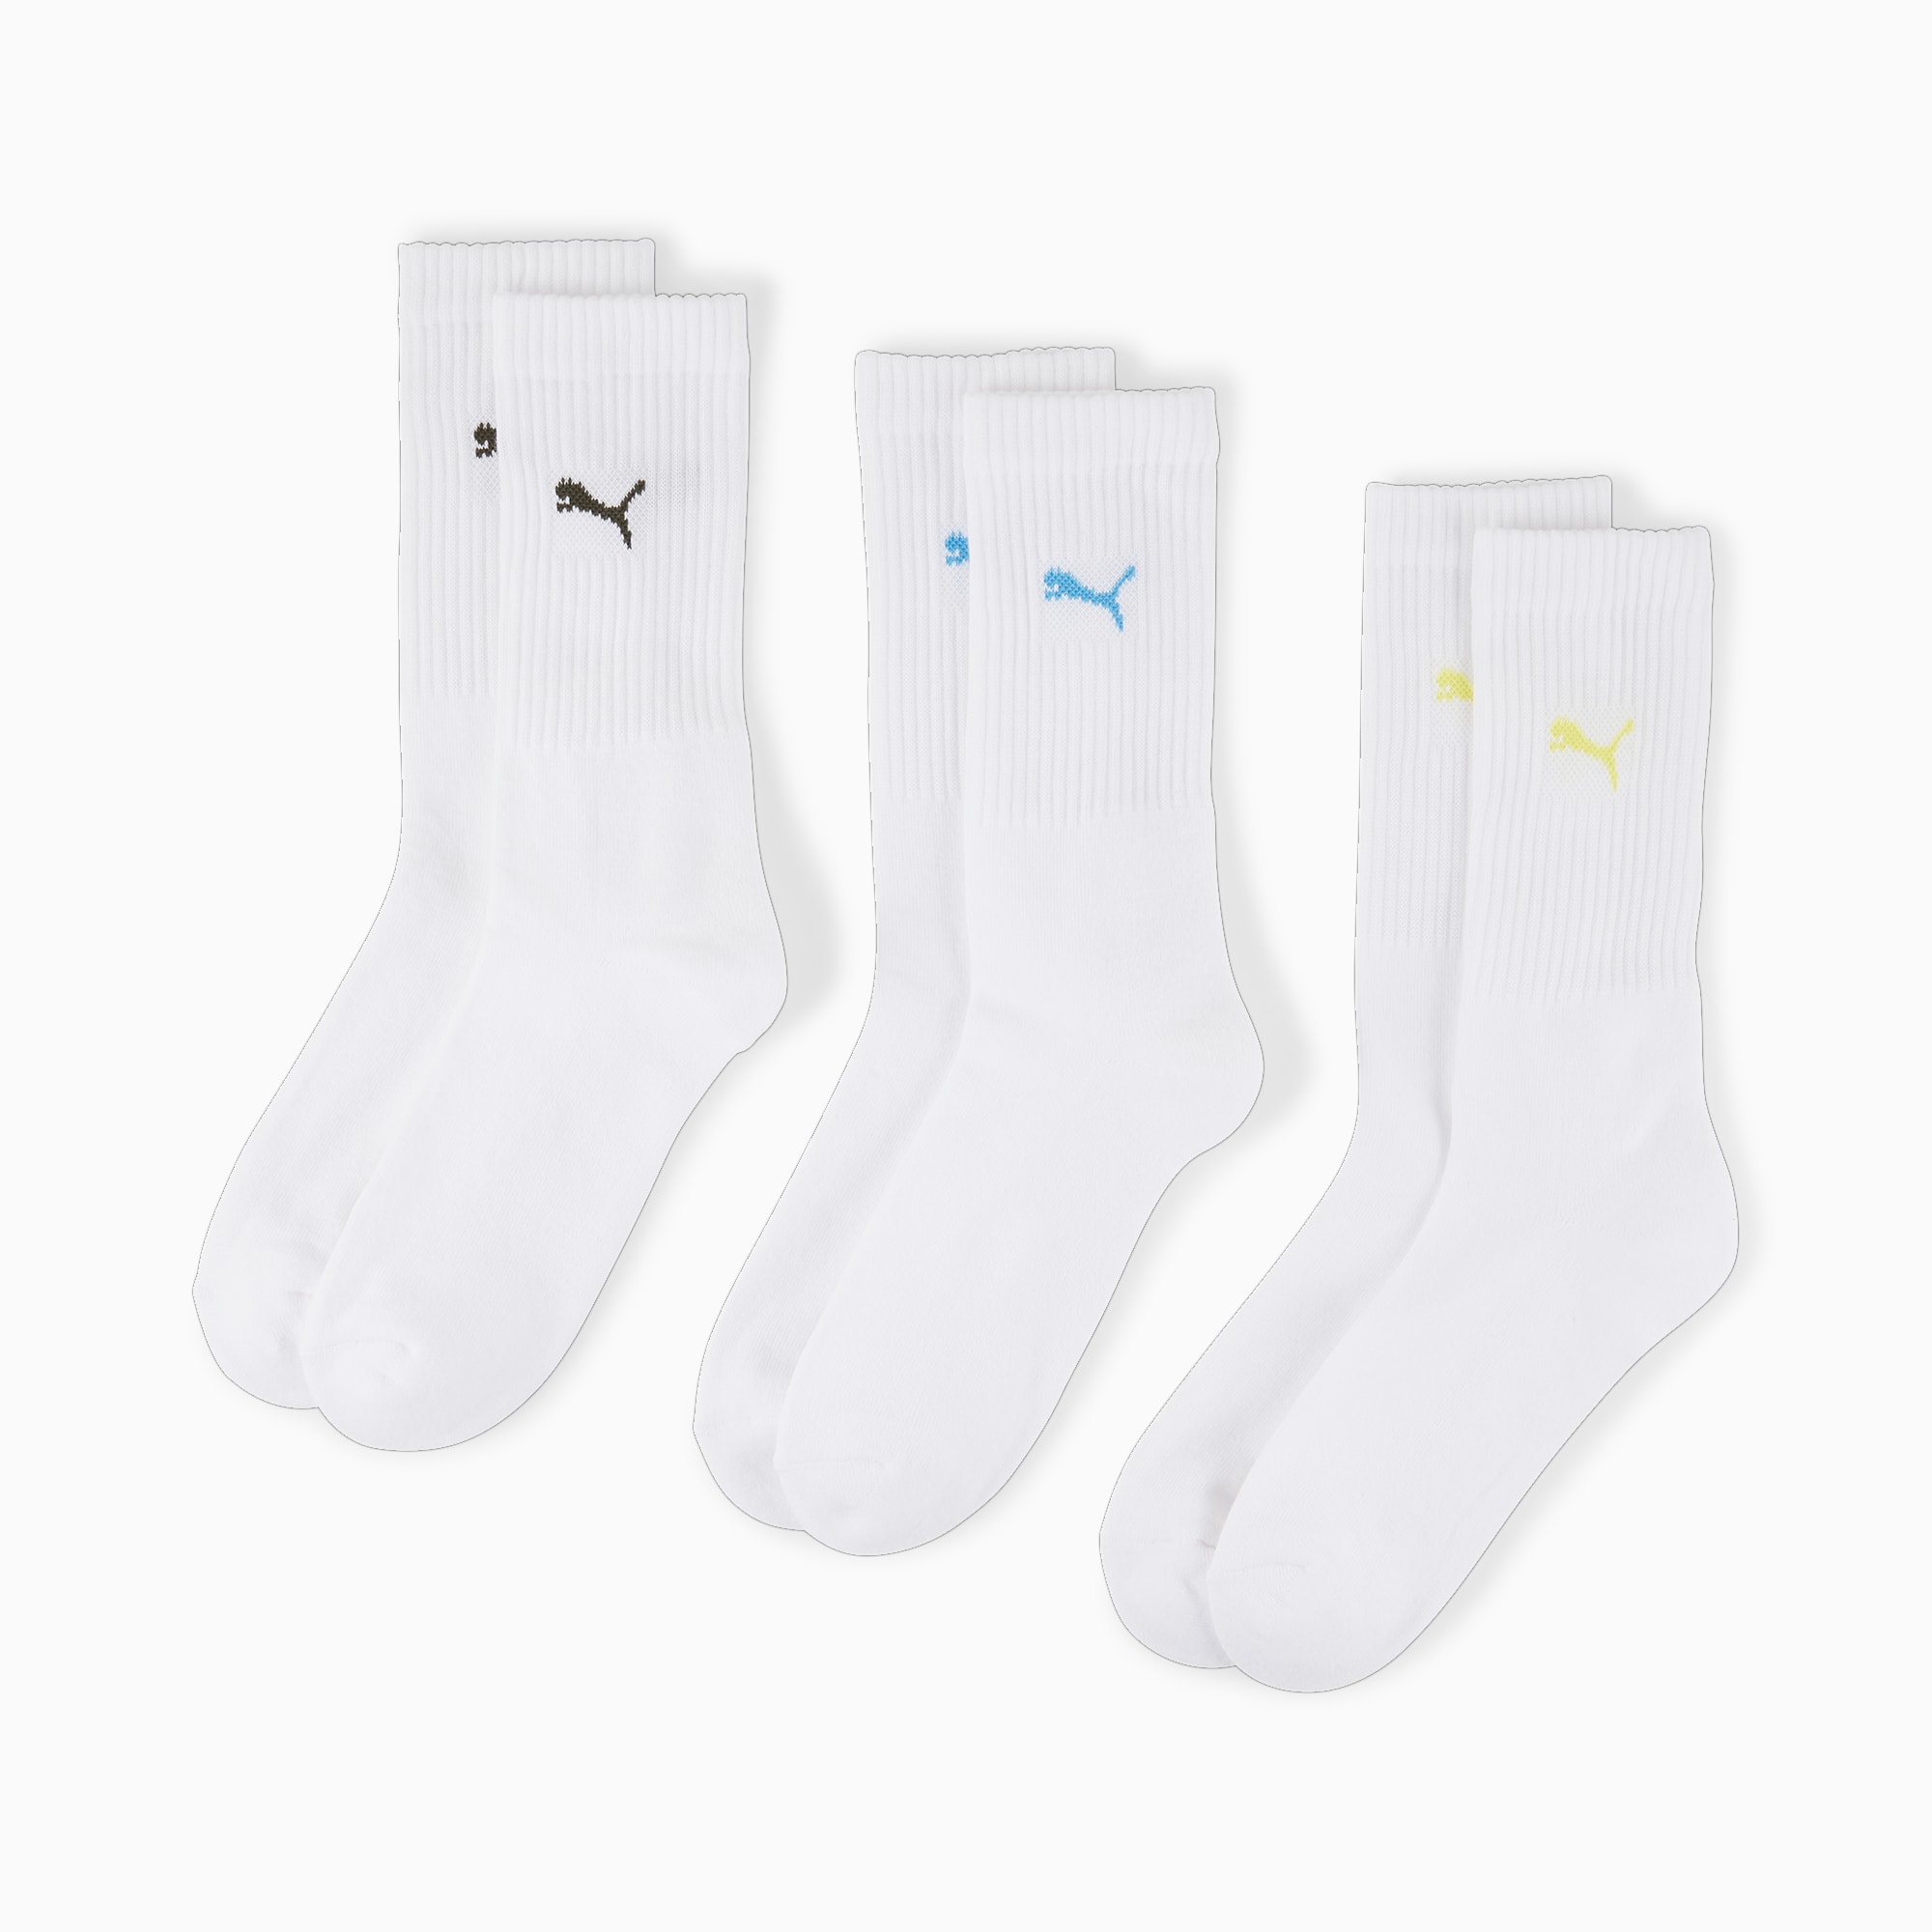 PUMA Calcetines deportivos Repreve para hombre, 12 pares (blanco), Blanco